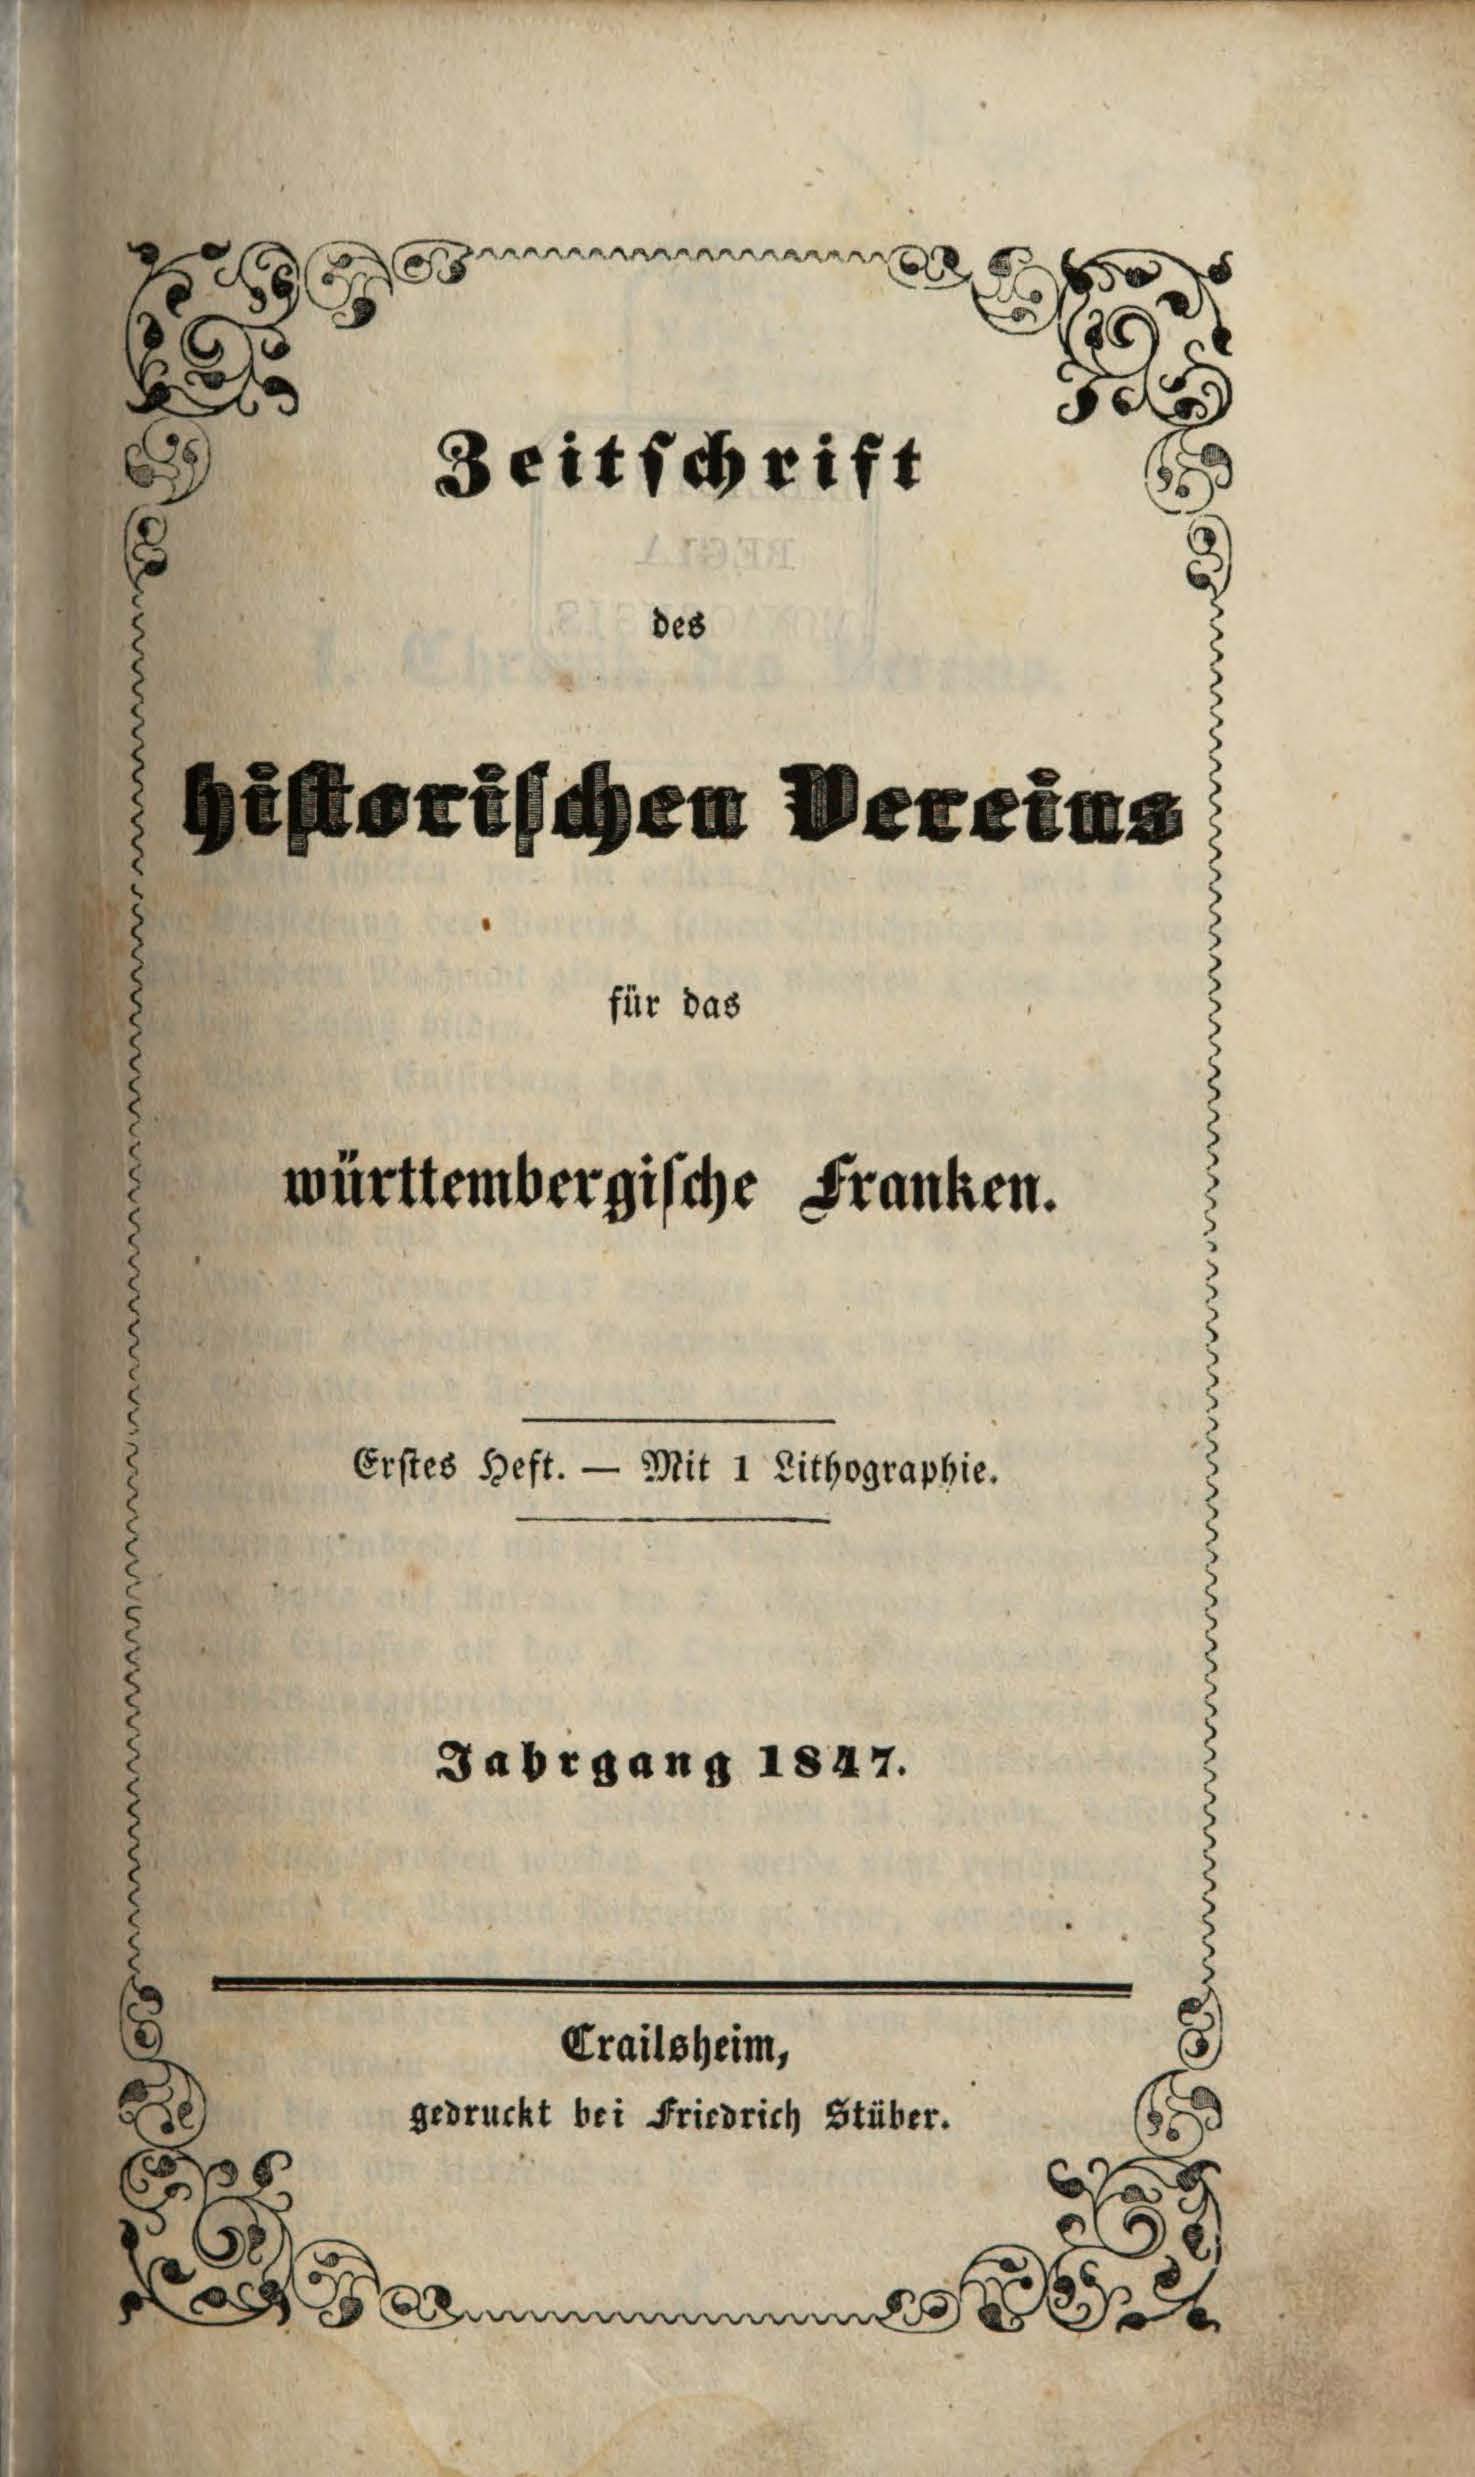                     Ansehen Bd. 1 Nr. 1 (1847): Zeitschrift des Historischen Vereins für das Württembergische Franken
                